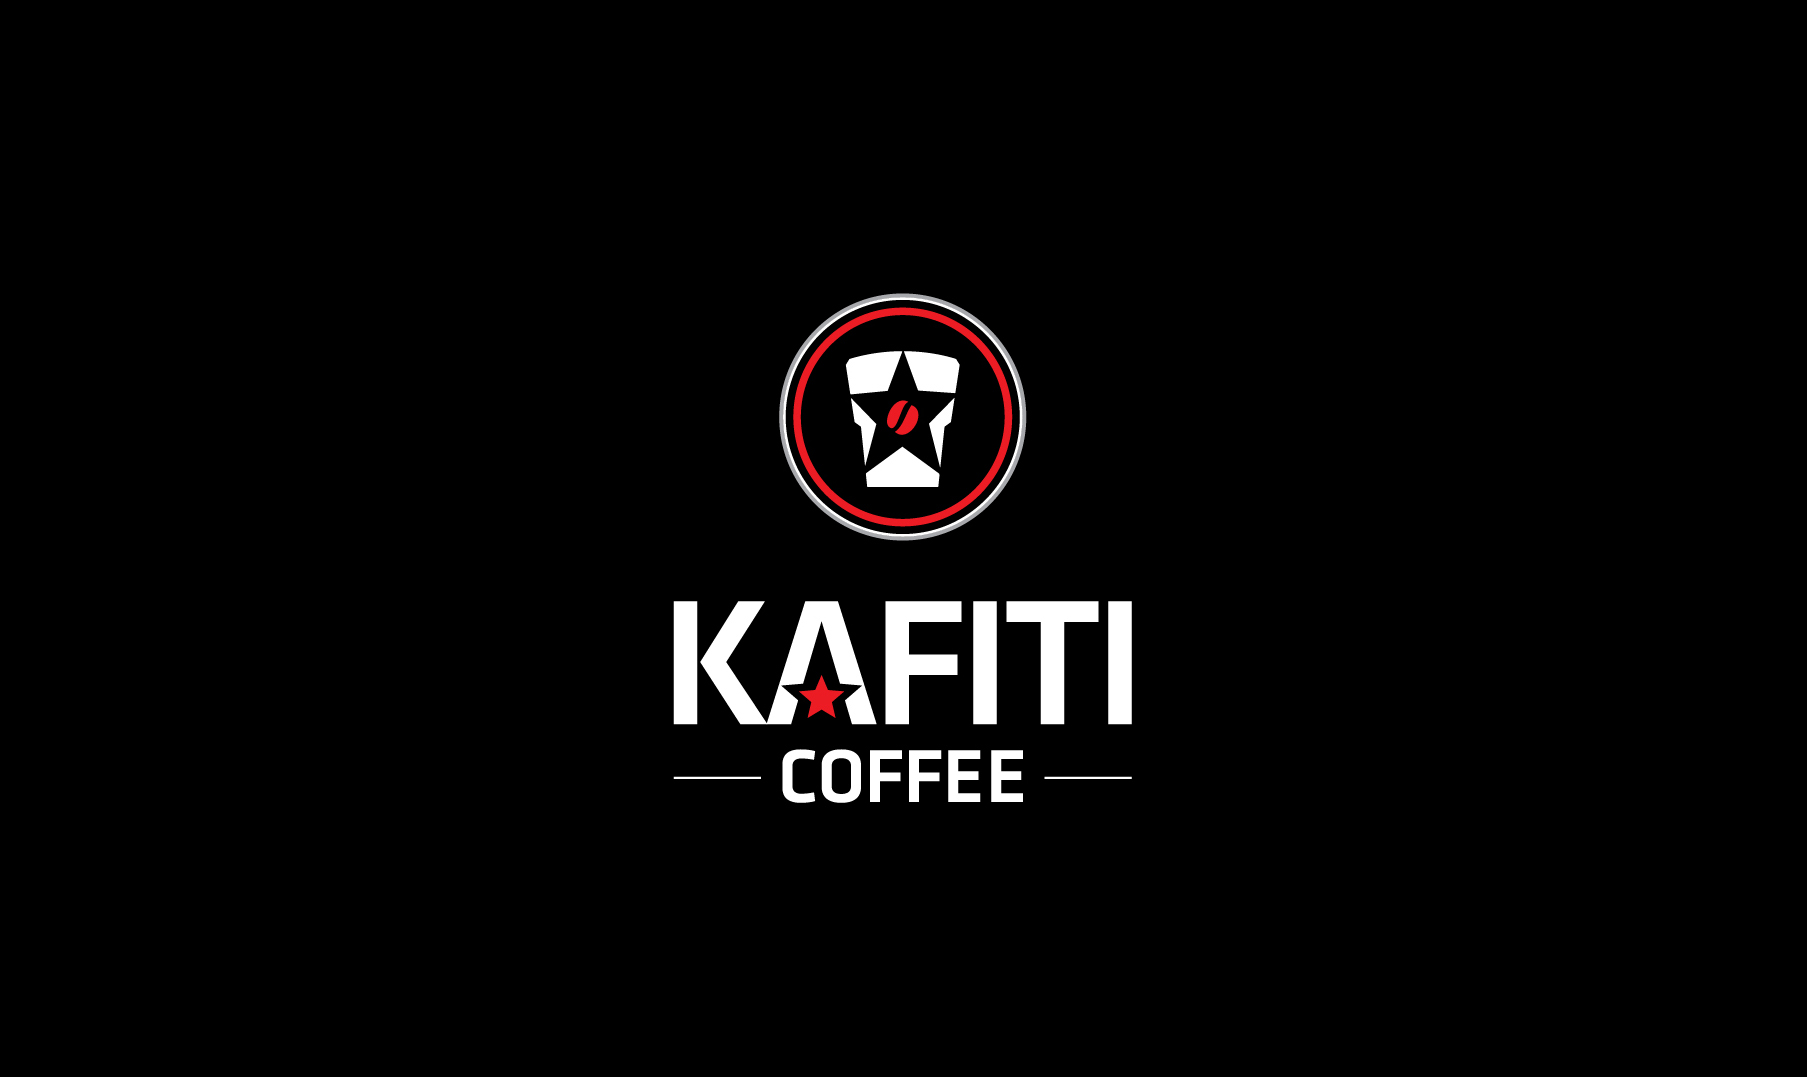 Kafiti Coffee Modern Vietnamese Coffee Shop Branding